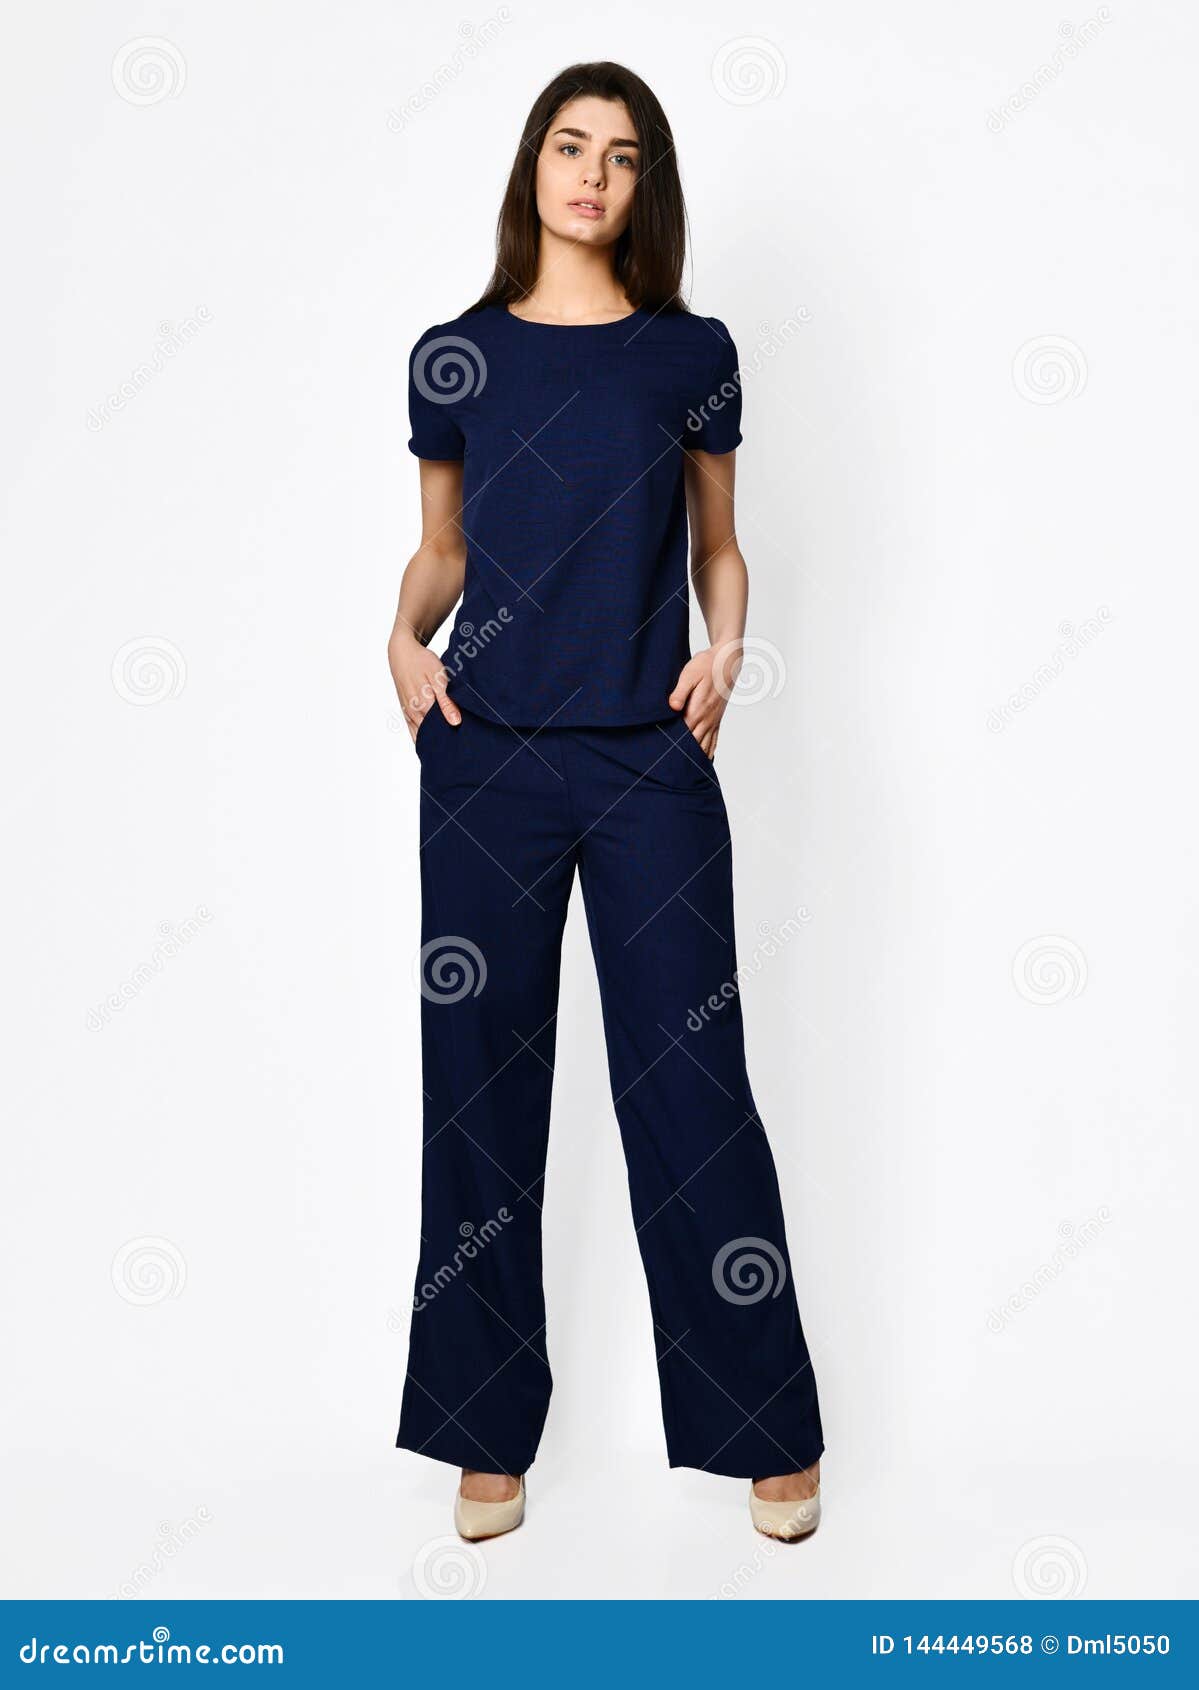 Mujer Hermosa Joven Que Presenta En Azul Marino Con El Traje Casual La Moda De Los Pantalones Foto de archivo - Imagen de humano, fashionable: 144449568